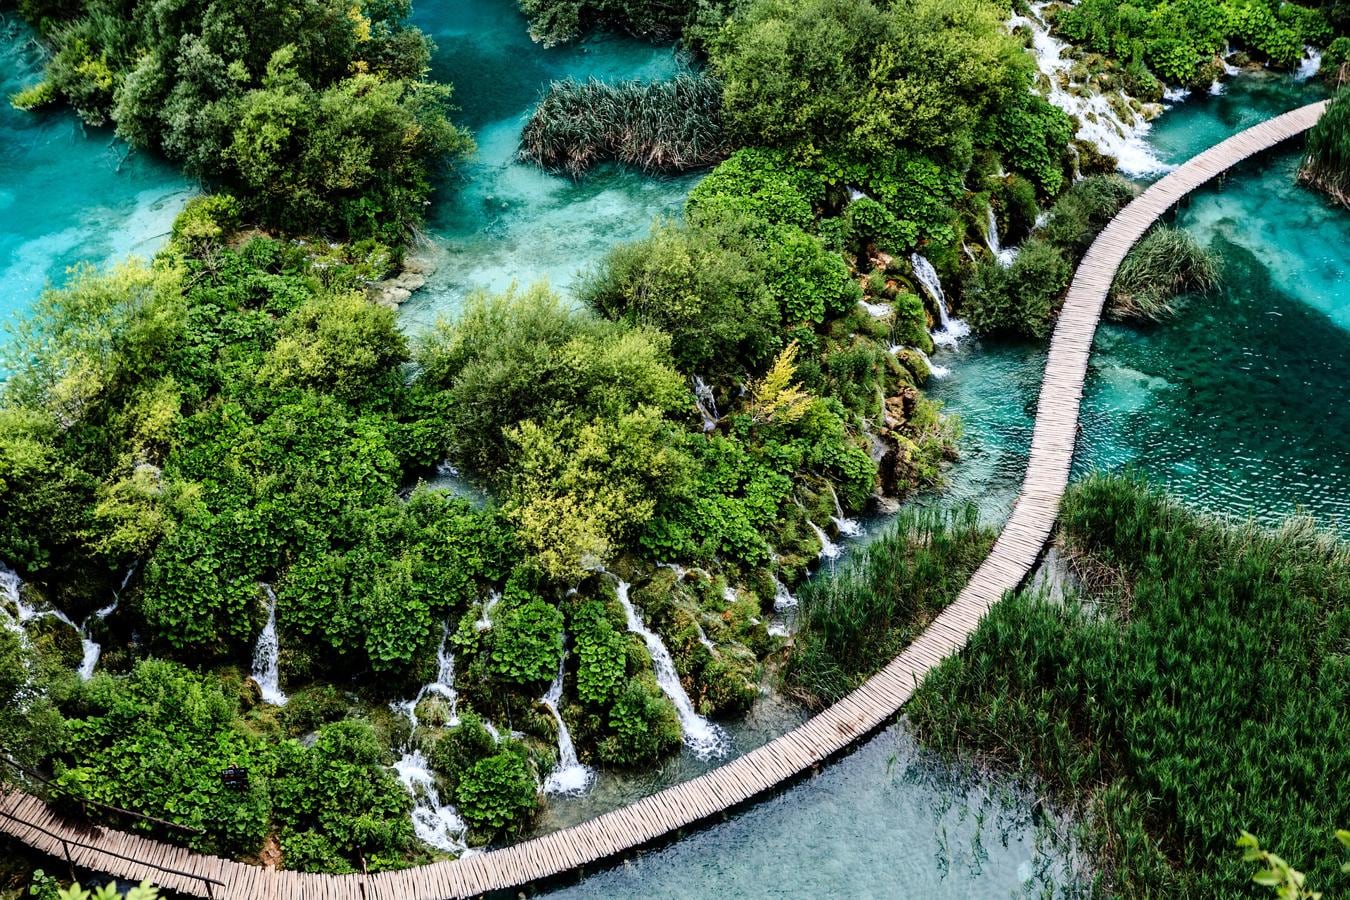 Parque nacional de los Lagos de Plitvice, Croacia (78.002 reseñas). Sus principales atractivos son, sin duda alguna, los 16 lagos conectados entre sí por cascadas de diferentes tamaños. La completa red de senderos del parque permite a los visitantes admirar de cerca toda la belleza de este espacio protegido, que forma parte de la Lista del Patrimonio de la Humanidad desde 1979. La Unesco lo describe así: 'Al discurrir a través de rocas dolomíticas y calcáreas, las aguas de este parque han depositado a lo largo de milenios barreras de roca travertina, creando así presas naturales que han dado lugar a la formación de toda una serie de lagos, cavernas y cascadas de gran belleza'.